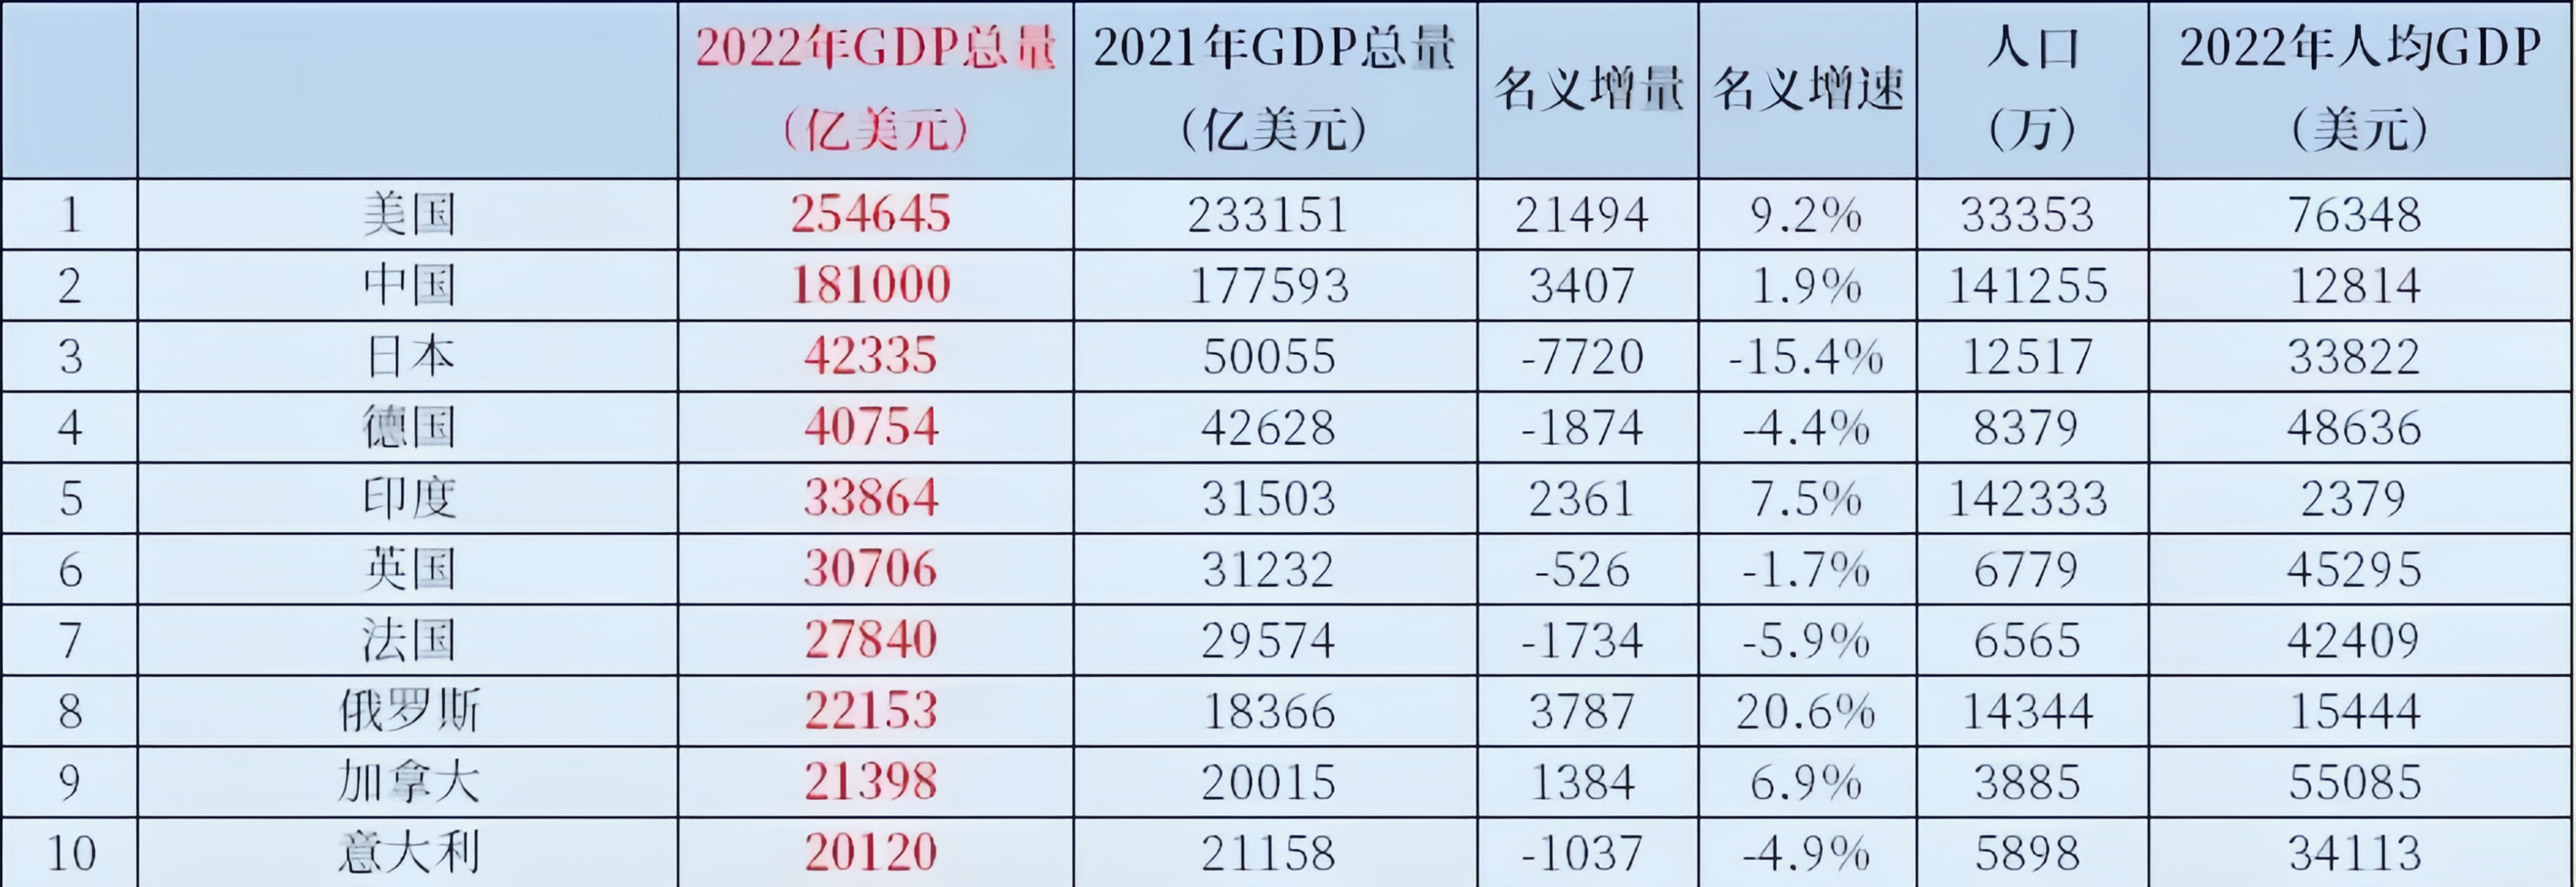 第二张图是今年第一季度gdp排名前十的国家,从数据上看,中美经济总量